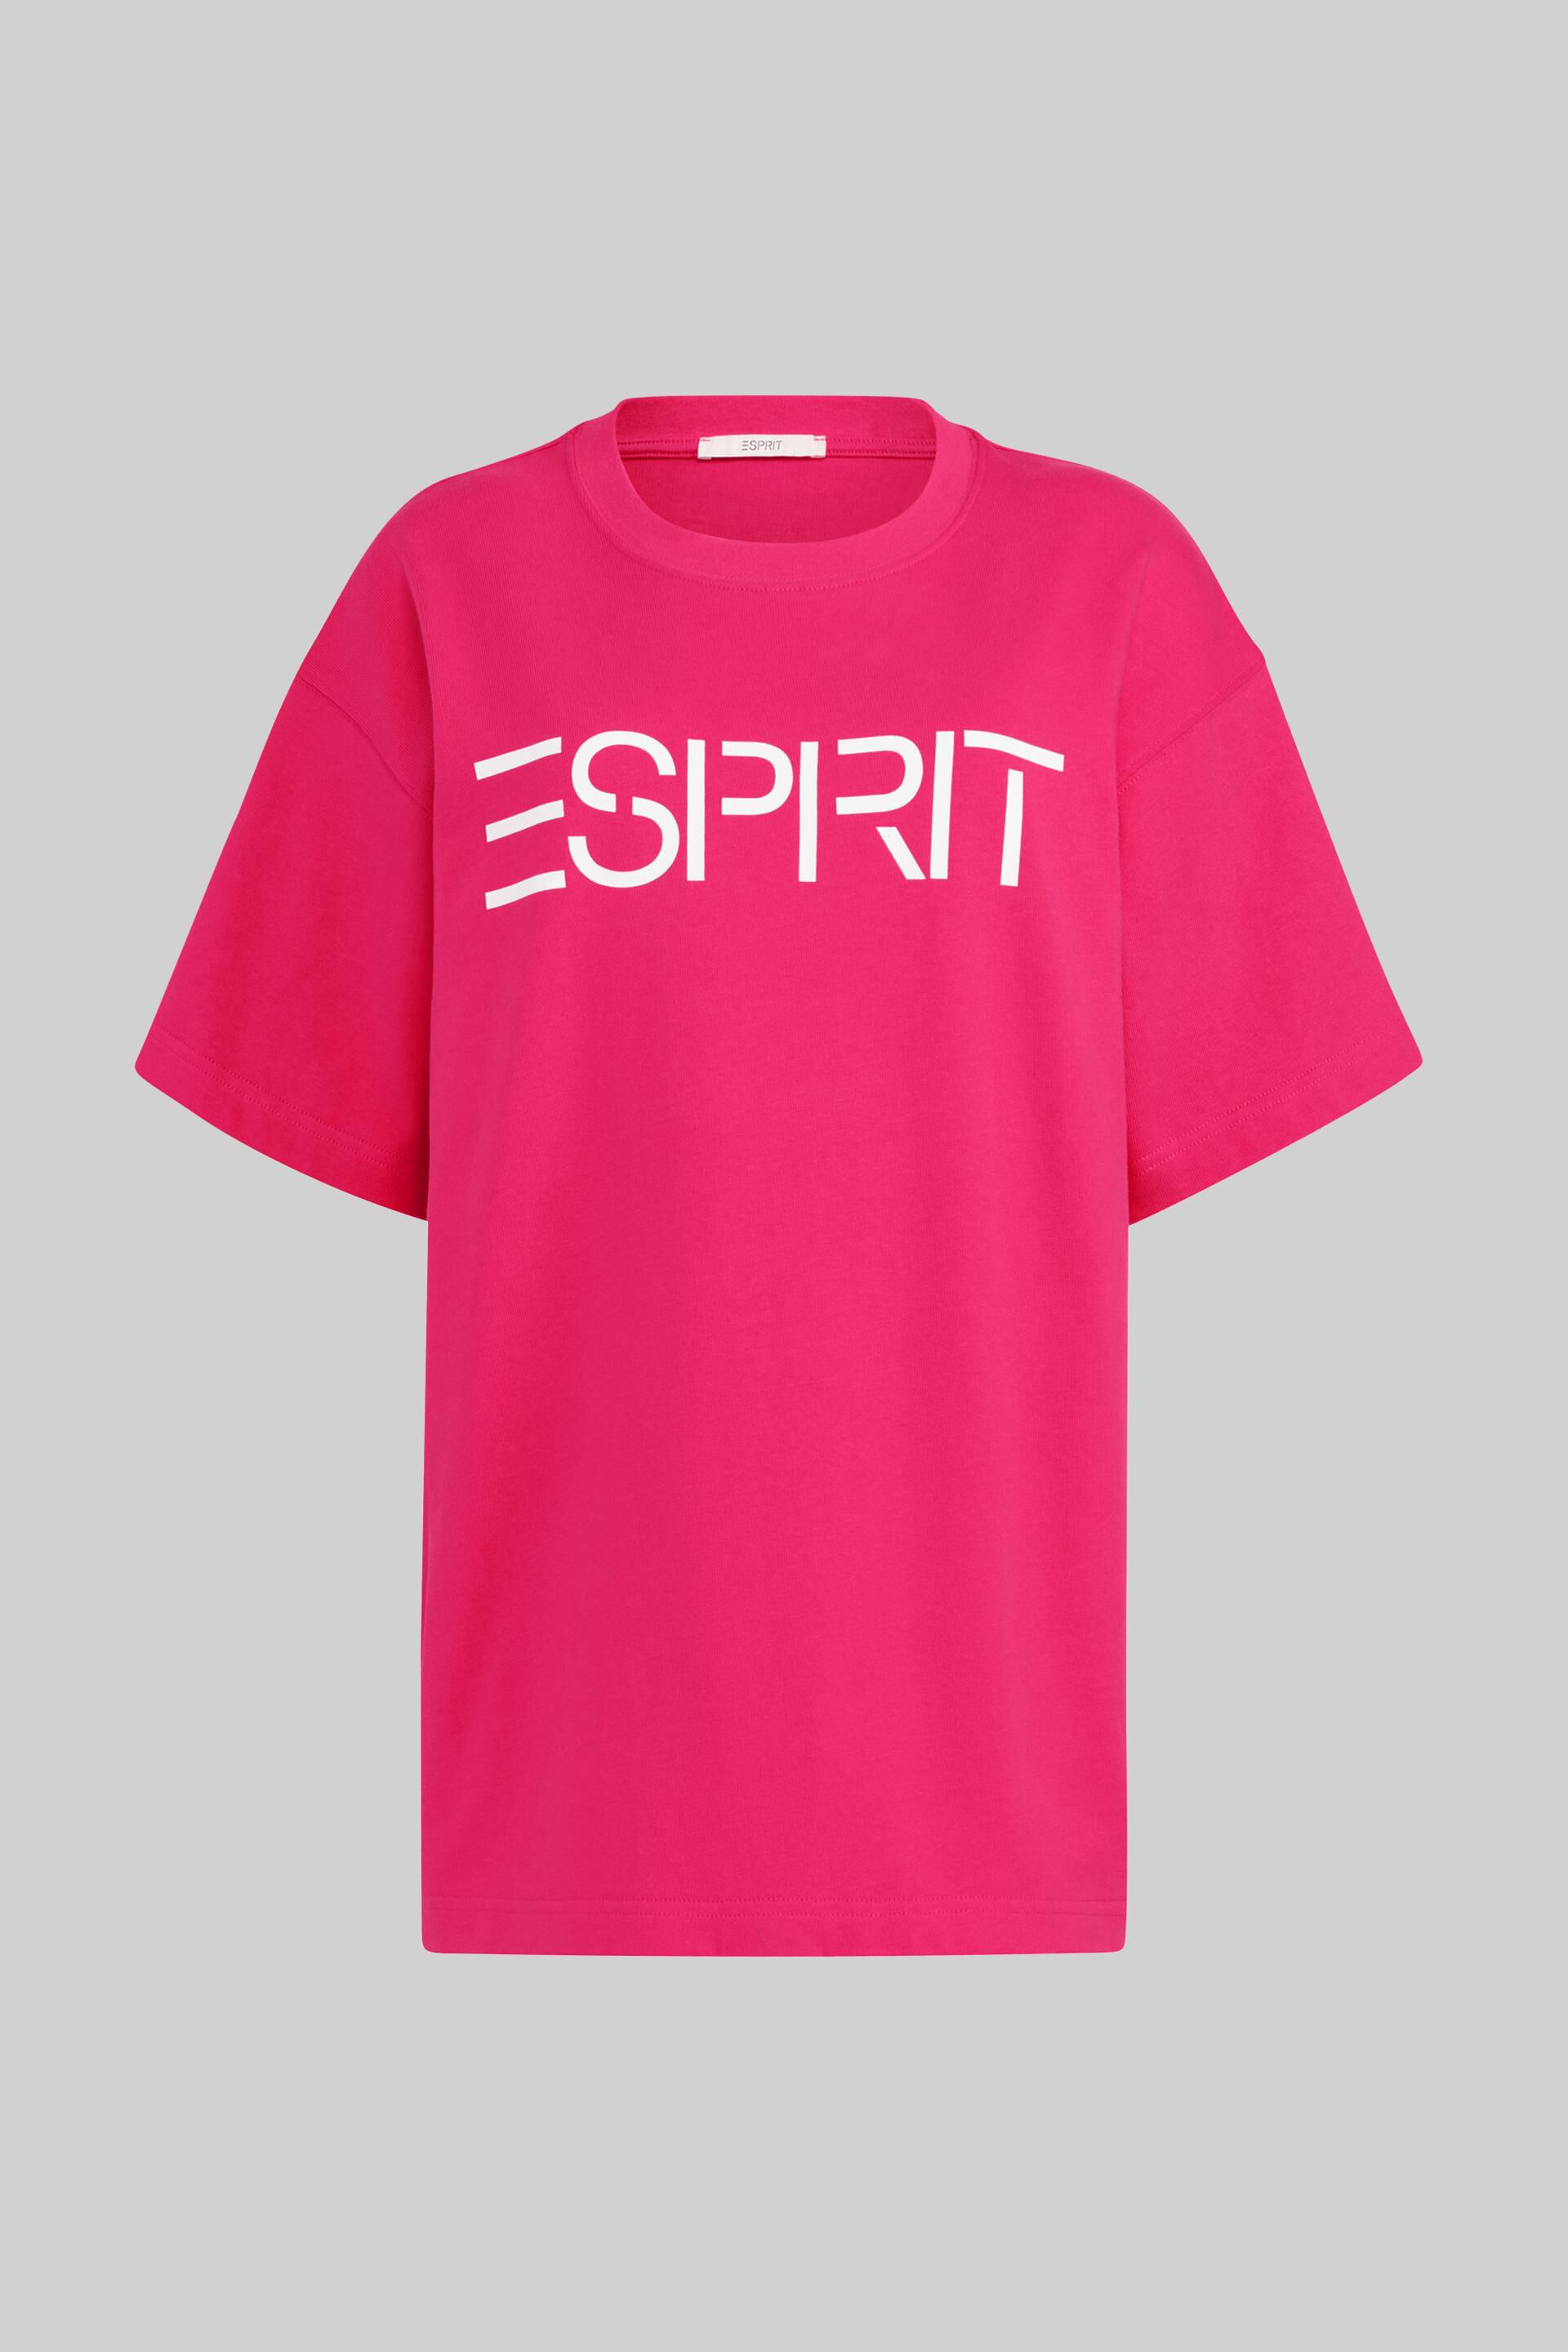 ESPRIT Girls T-Shirt Ss STRI